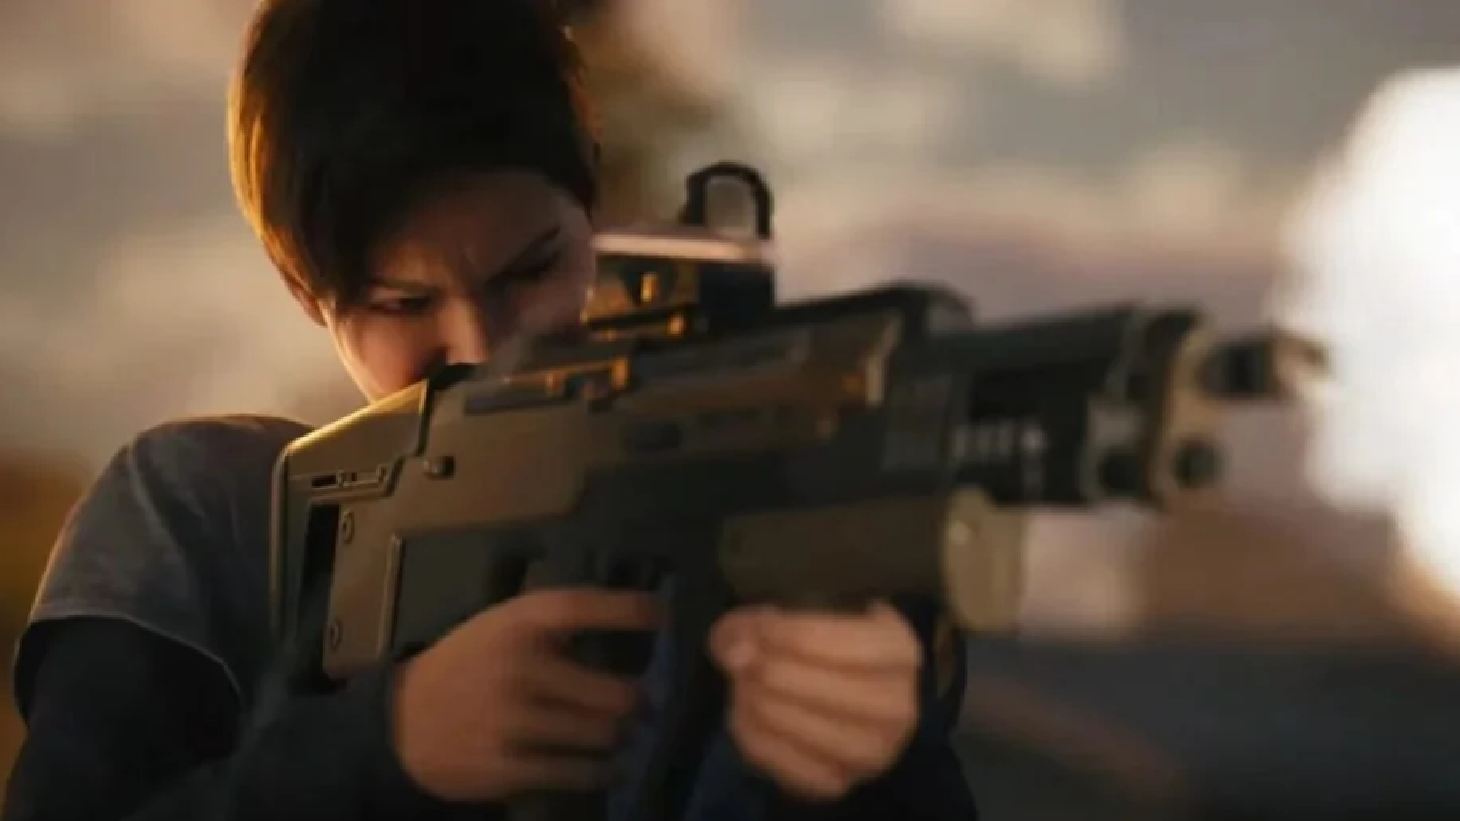 Mindseye Release Date: A character can be seen firing a gun